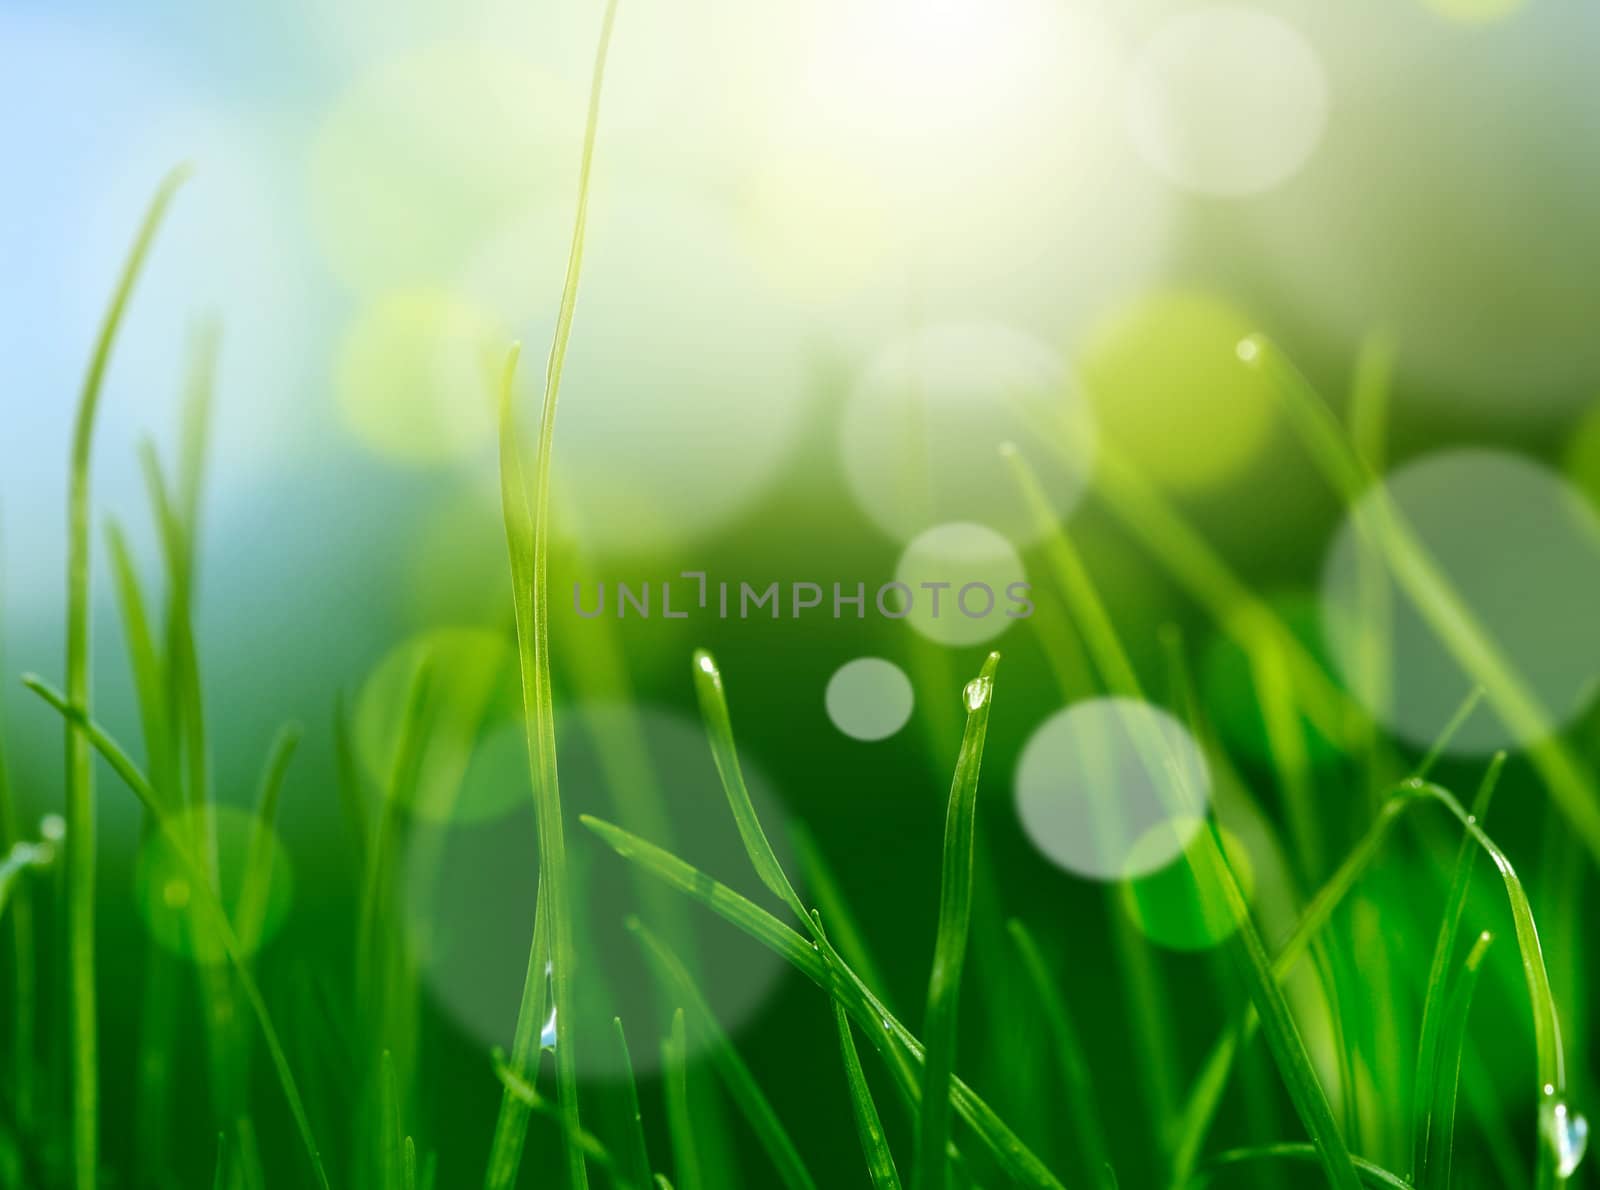 soft blur green grass background by rudchenko